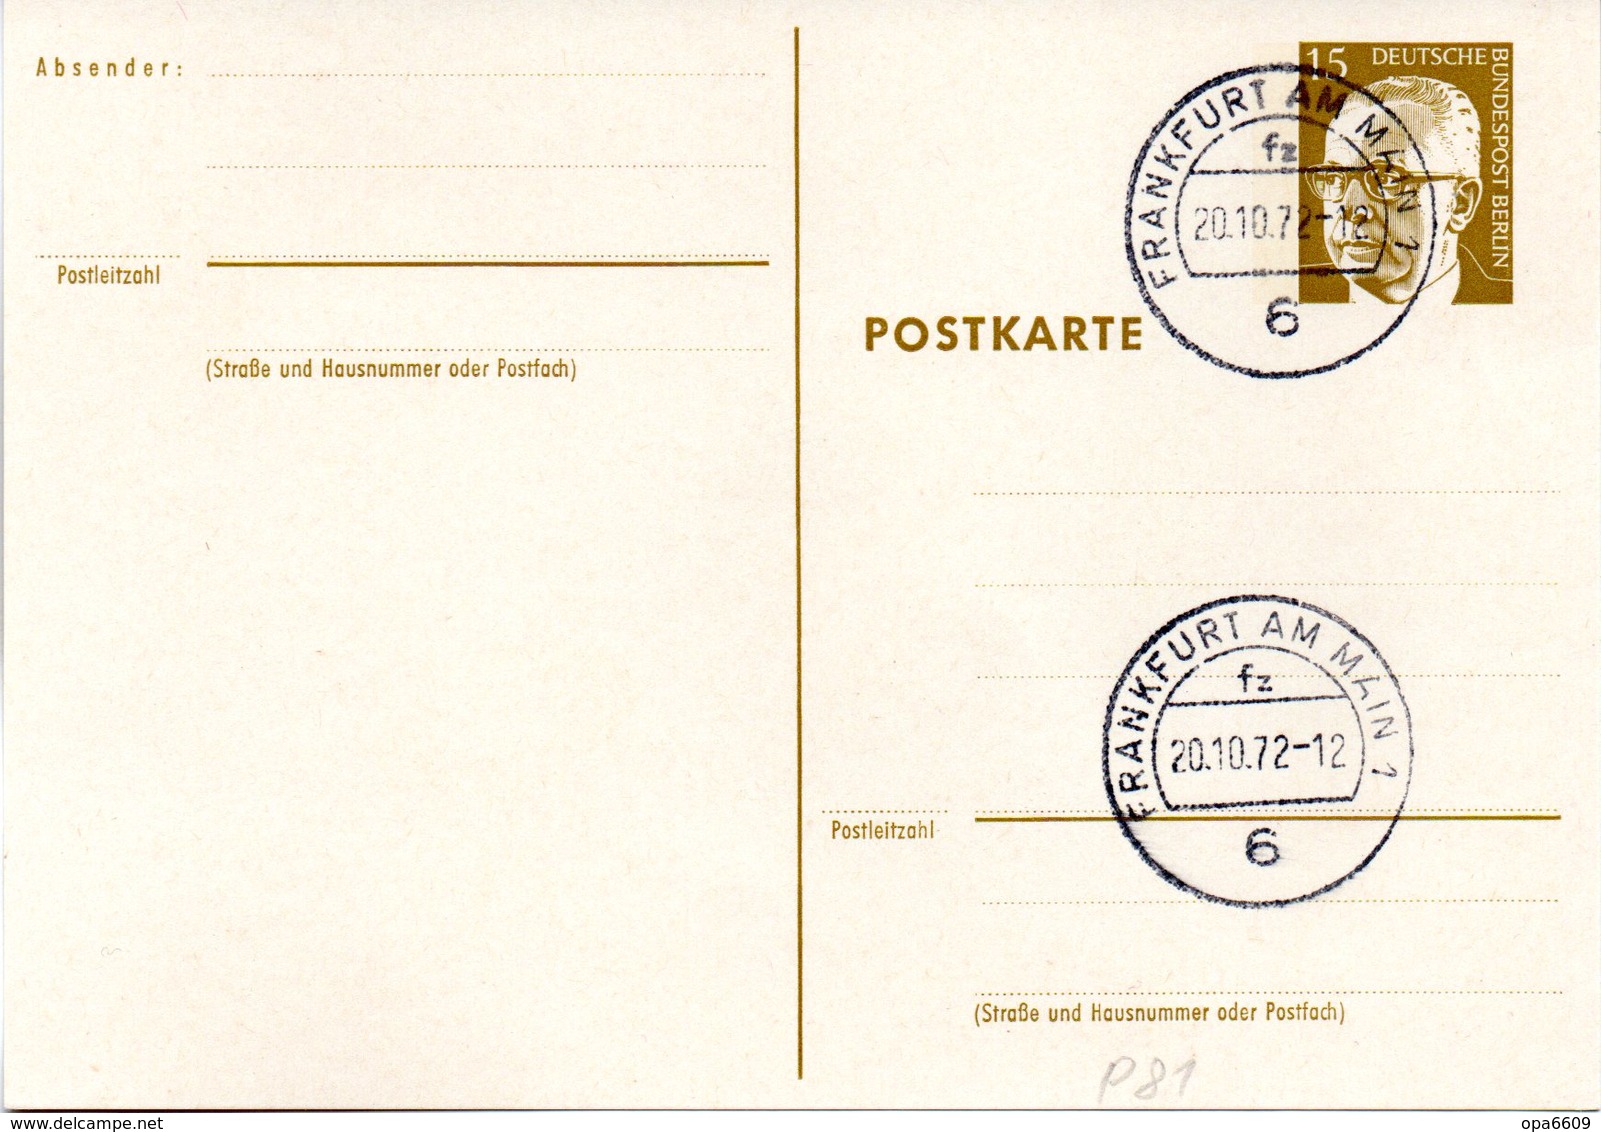 WB Amtl. Ganzsachen-Postkarte P81 Wst. "Heinemann" 15(Pf) Braunoliv, Blanko TSt 20.10.72 FRANKFURT AM MAIN 1 - Cartes Postales - Oblitérées